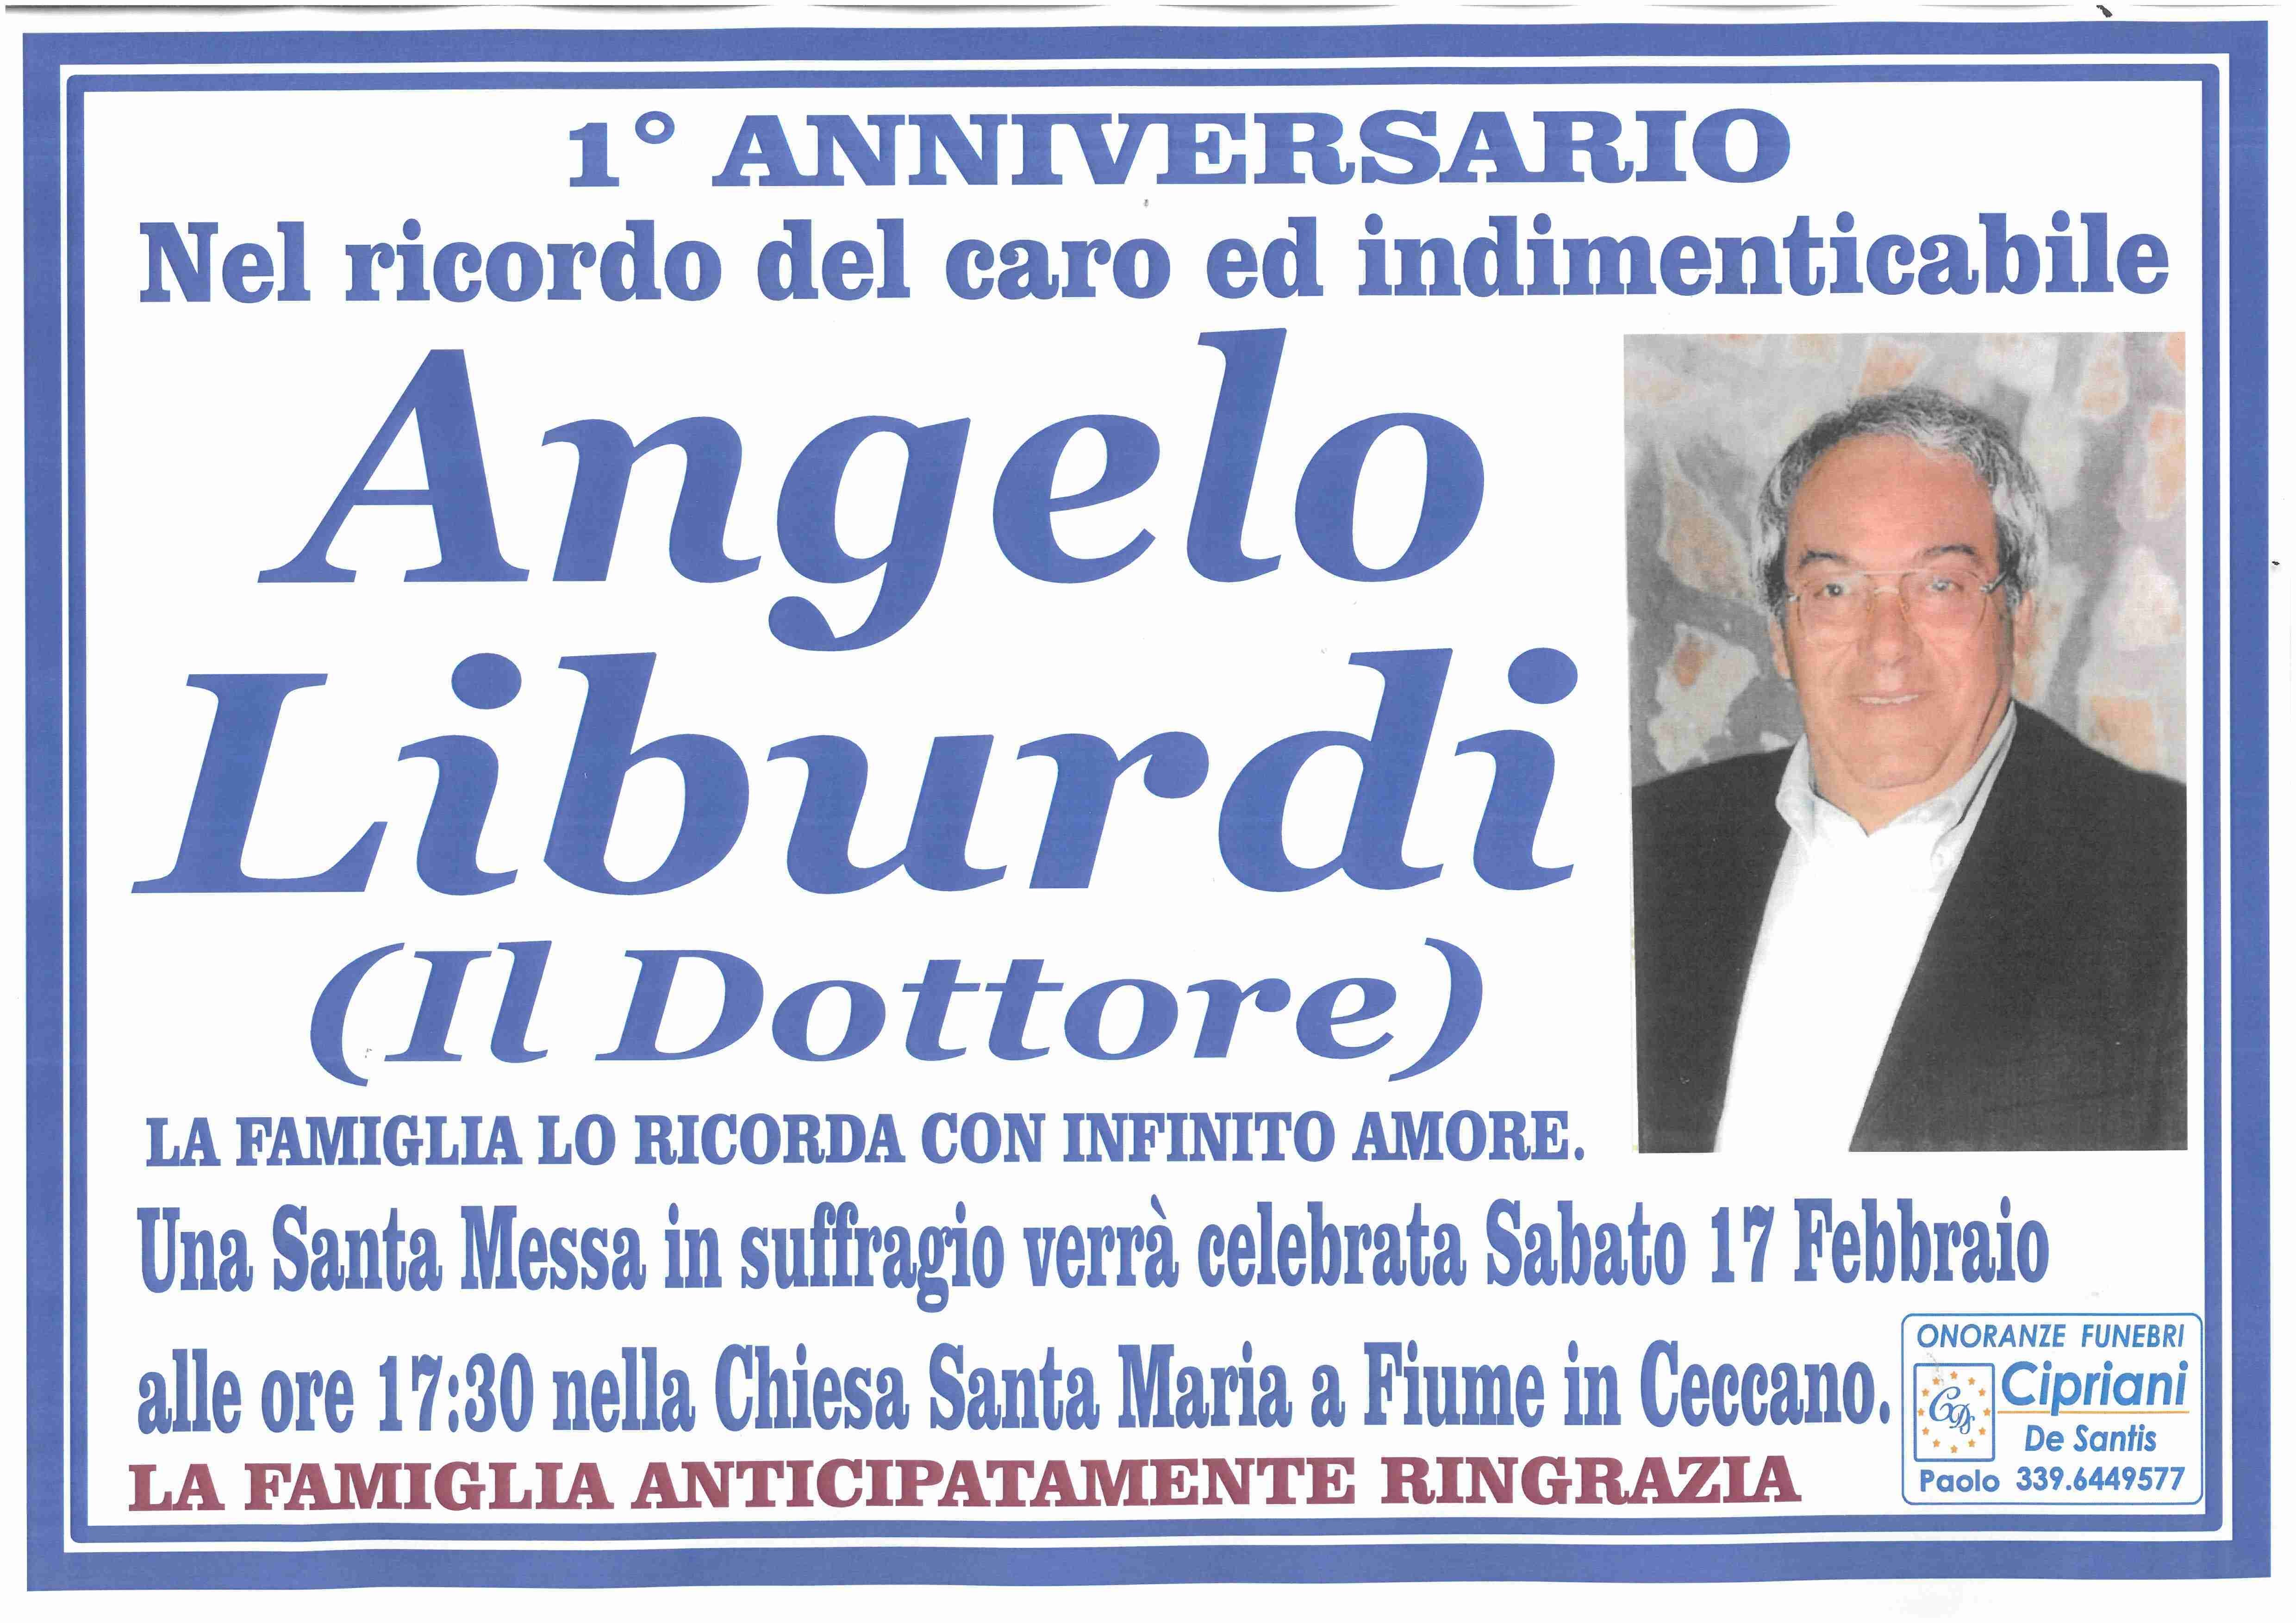 Angelo Liburdi